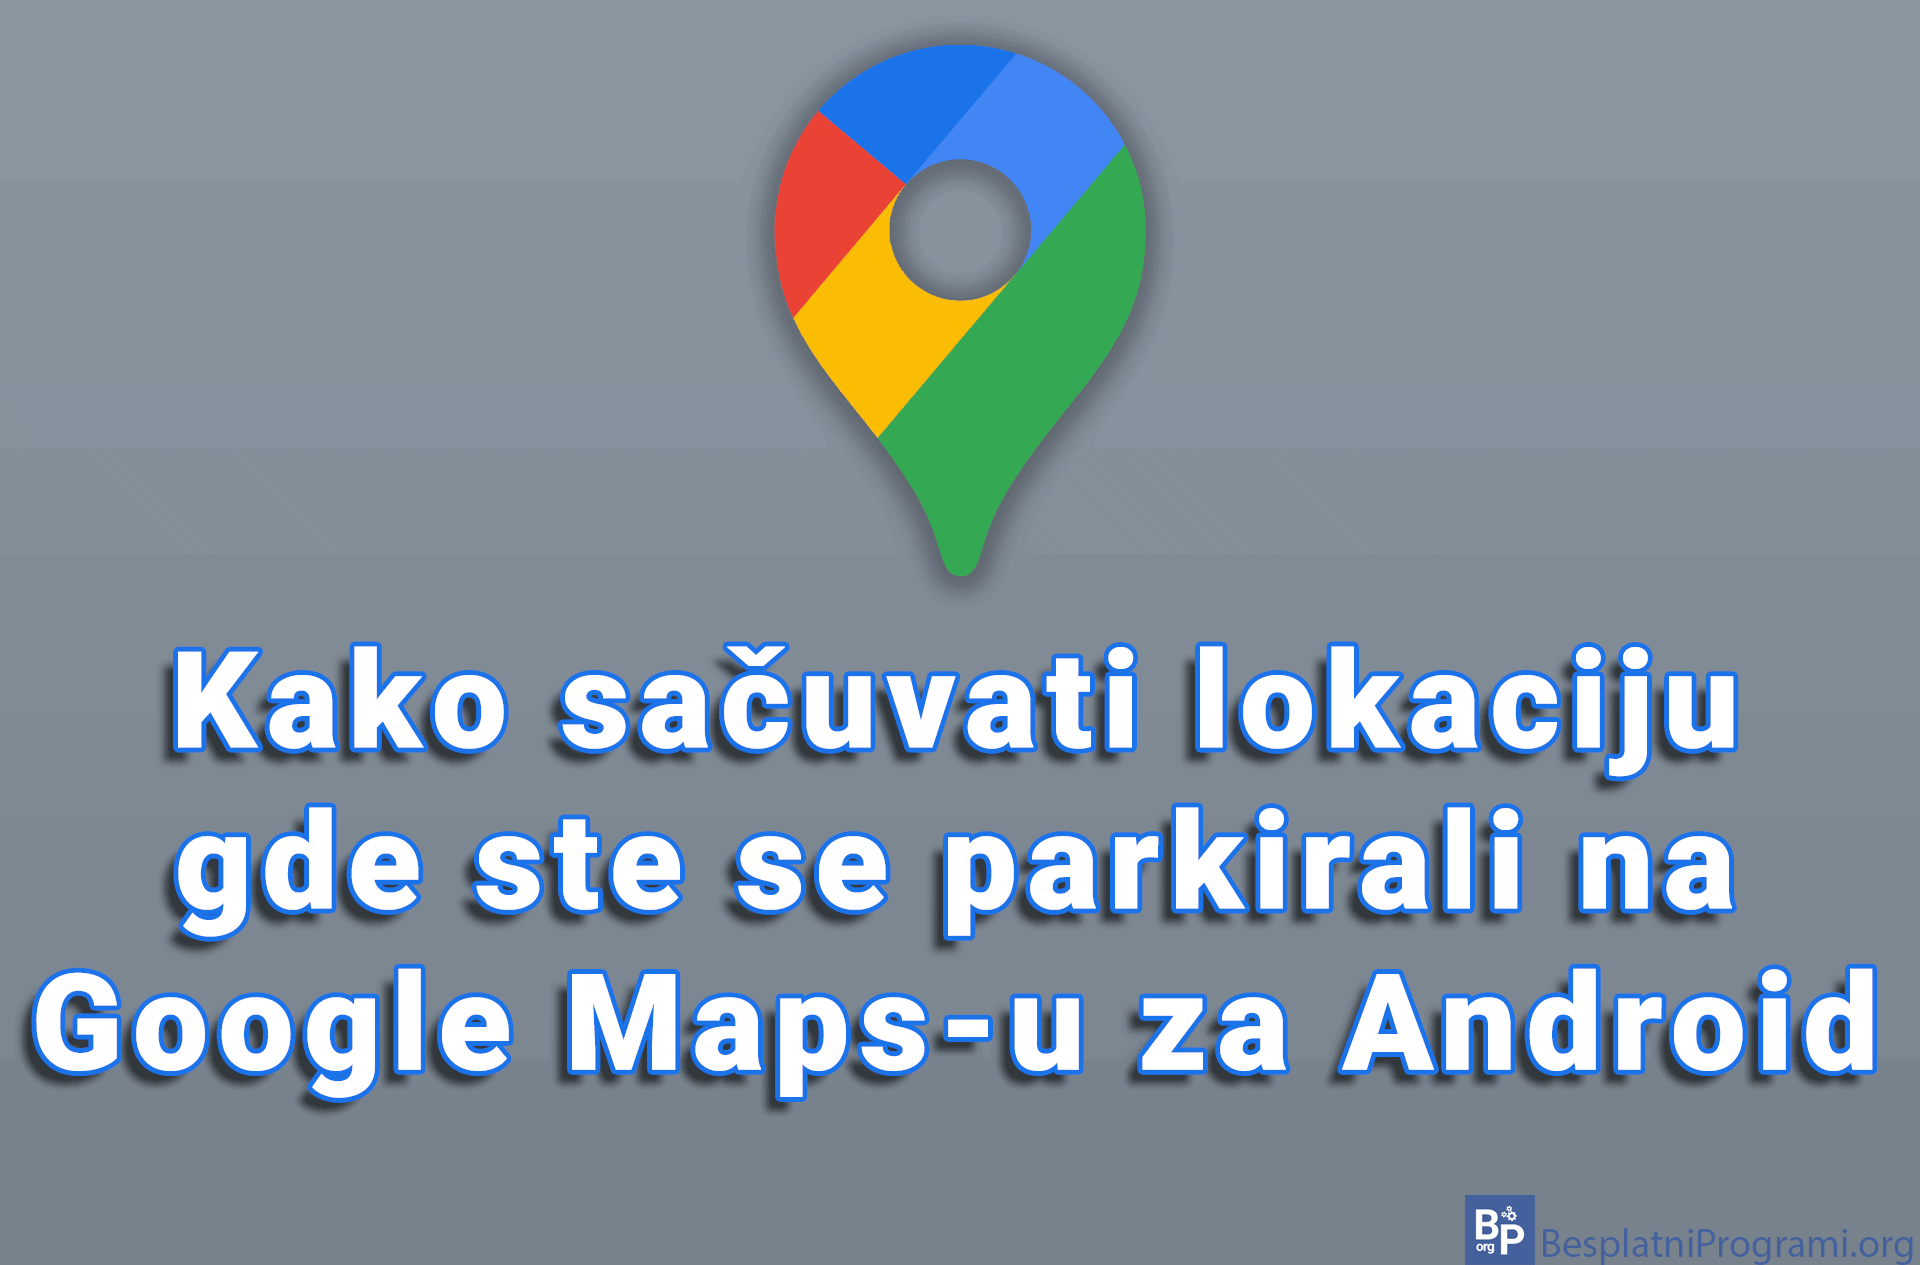 Kako sačuvati lokaciju gde ste se parkirali na Google Maps-u za Android